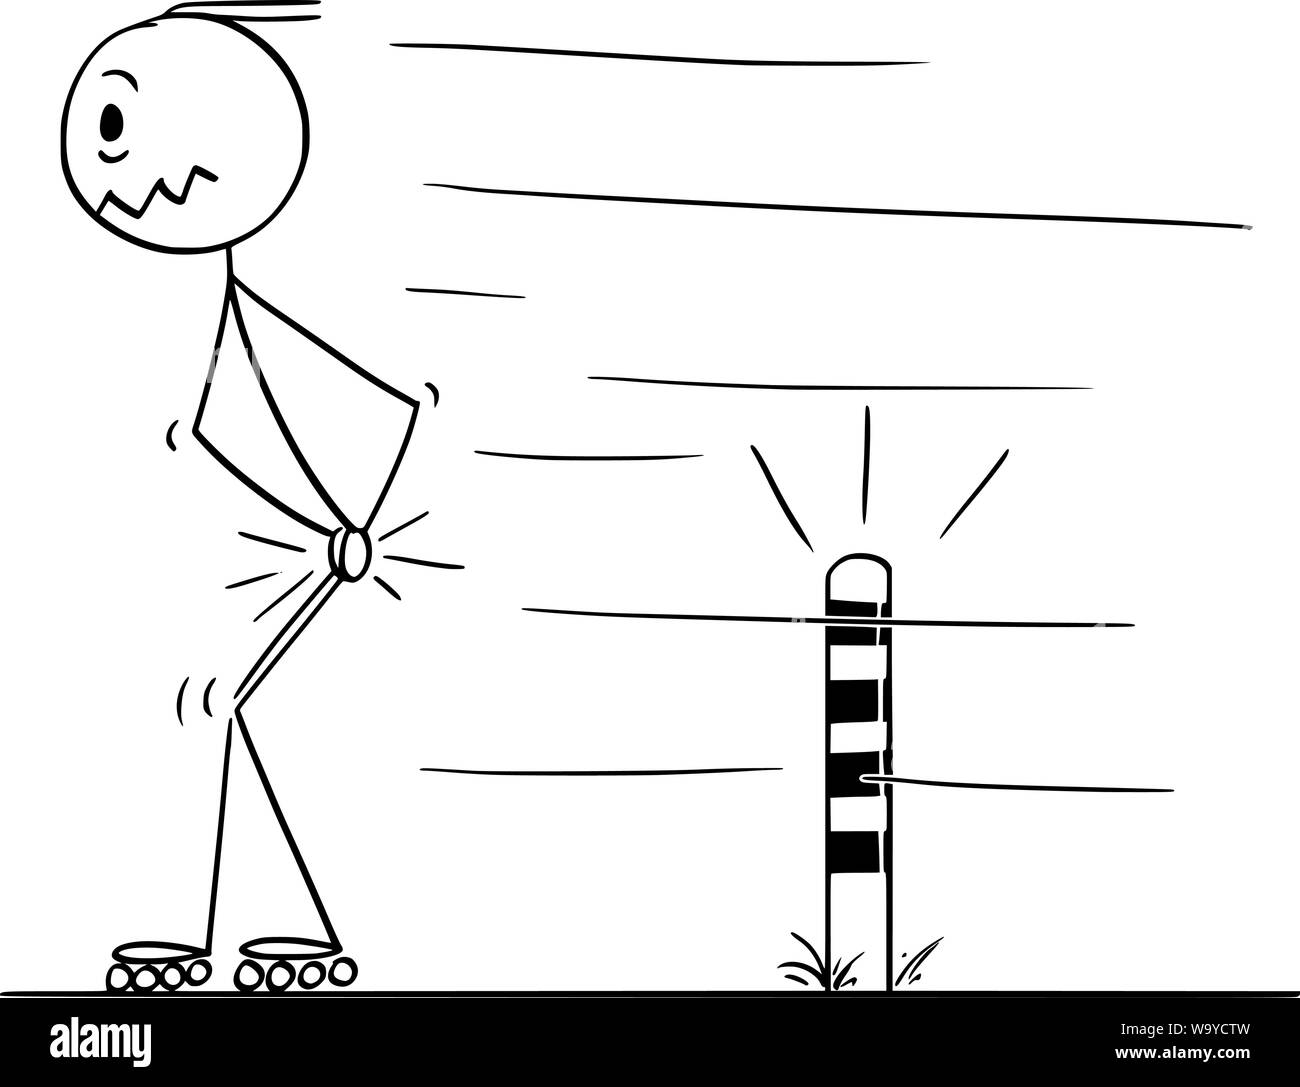 Vector cartoon stick figure dessin illustration conceptuelle de l'homme sur les patins à roues alignées, et douloureusement frappé ses testicules en passant petit post sur la route. Illustration de Vecteur